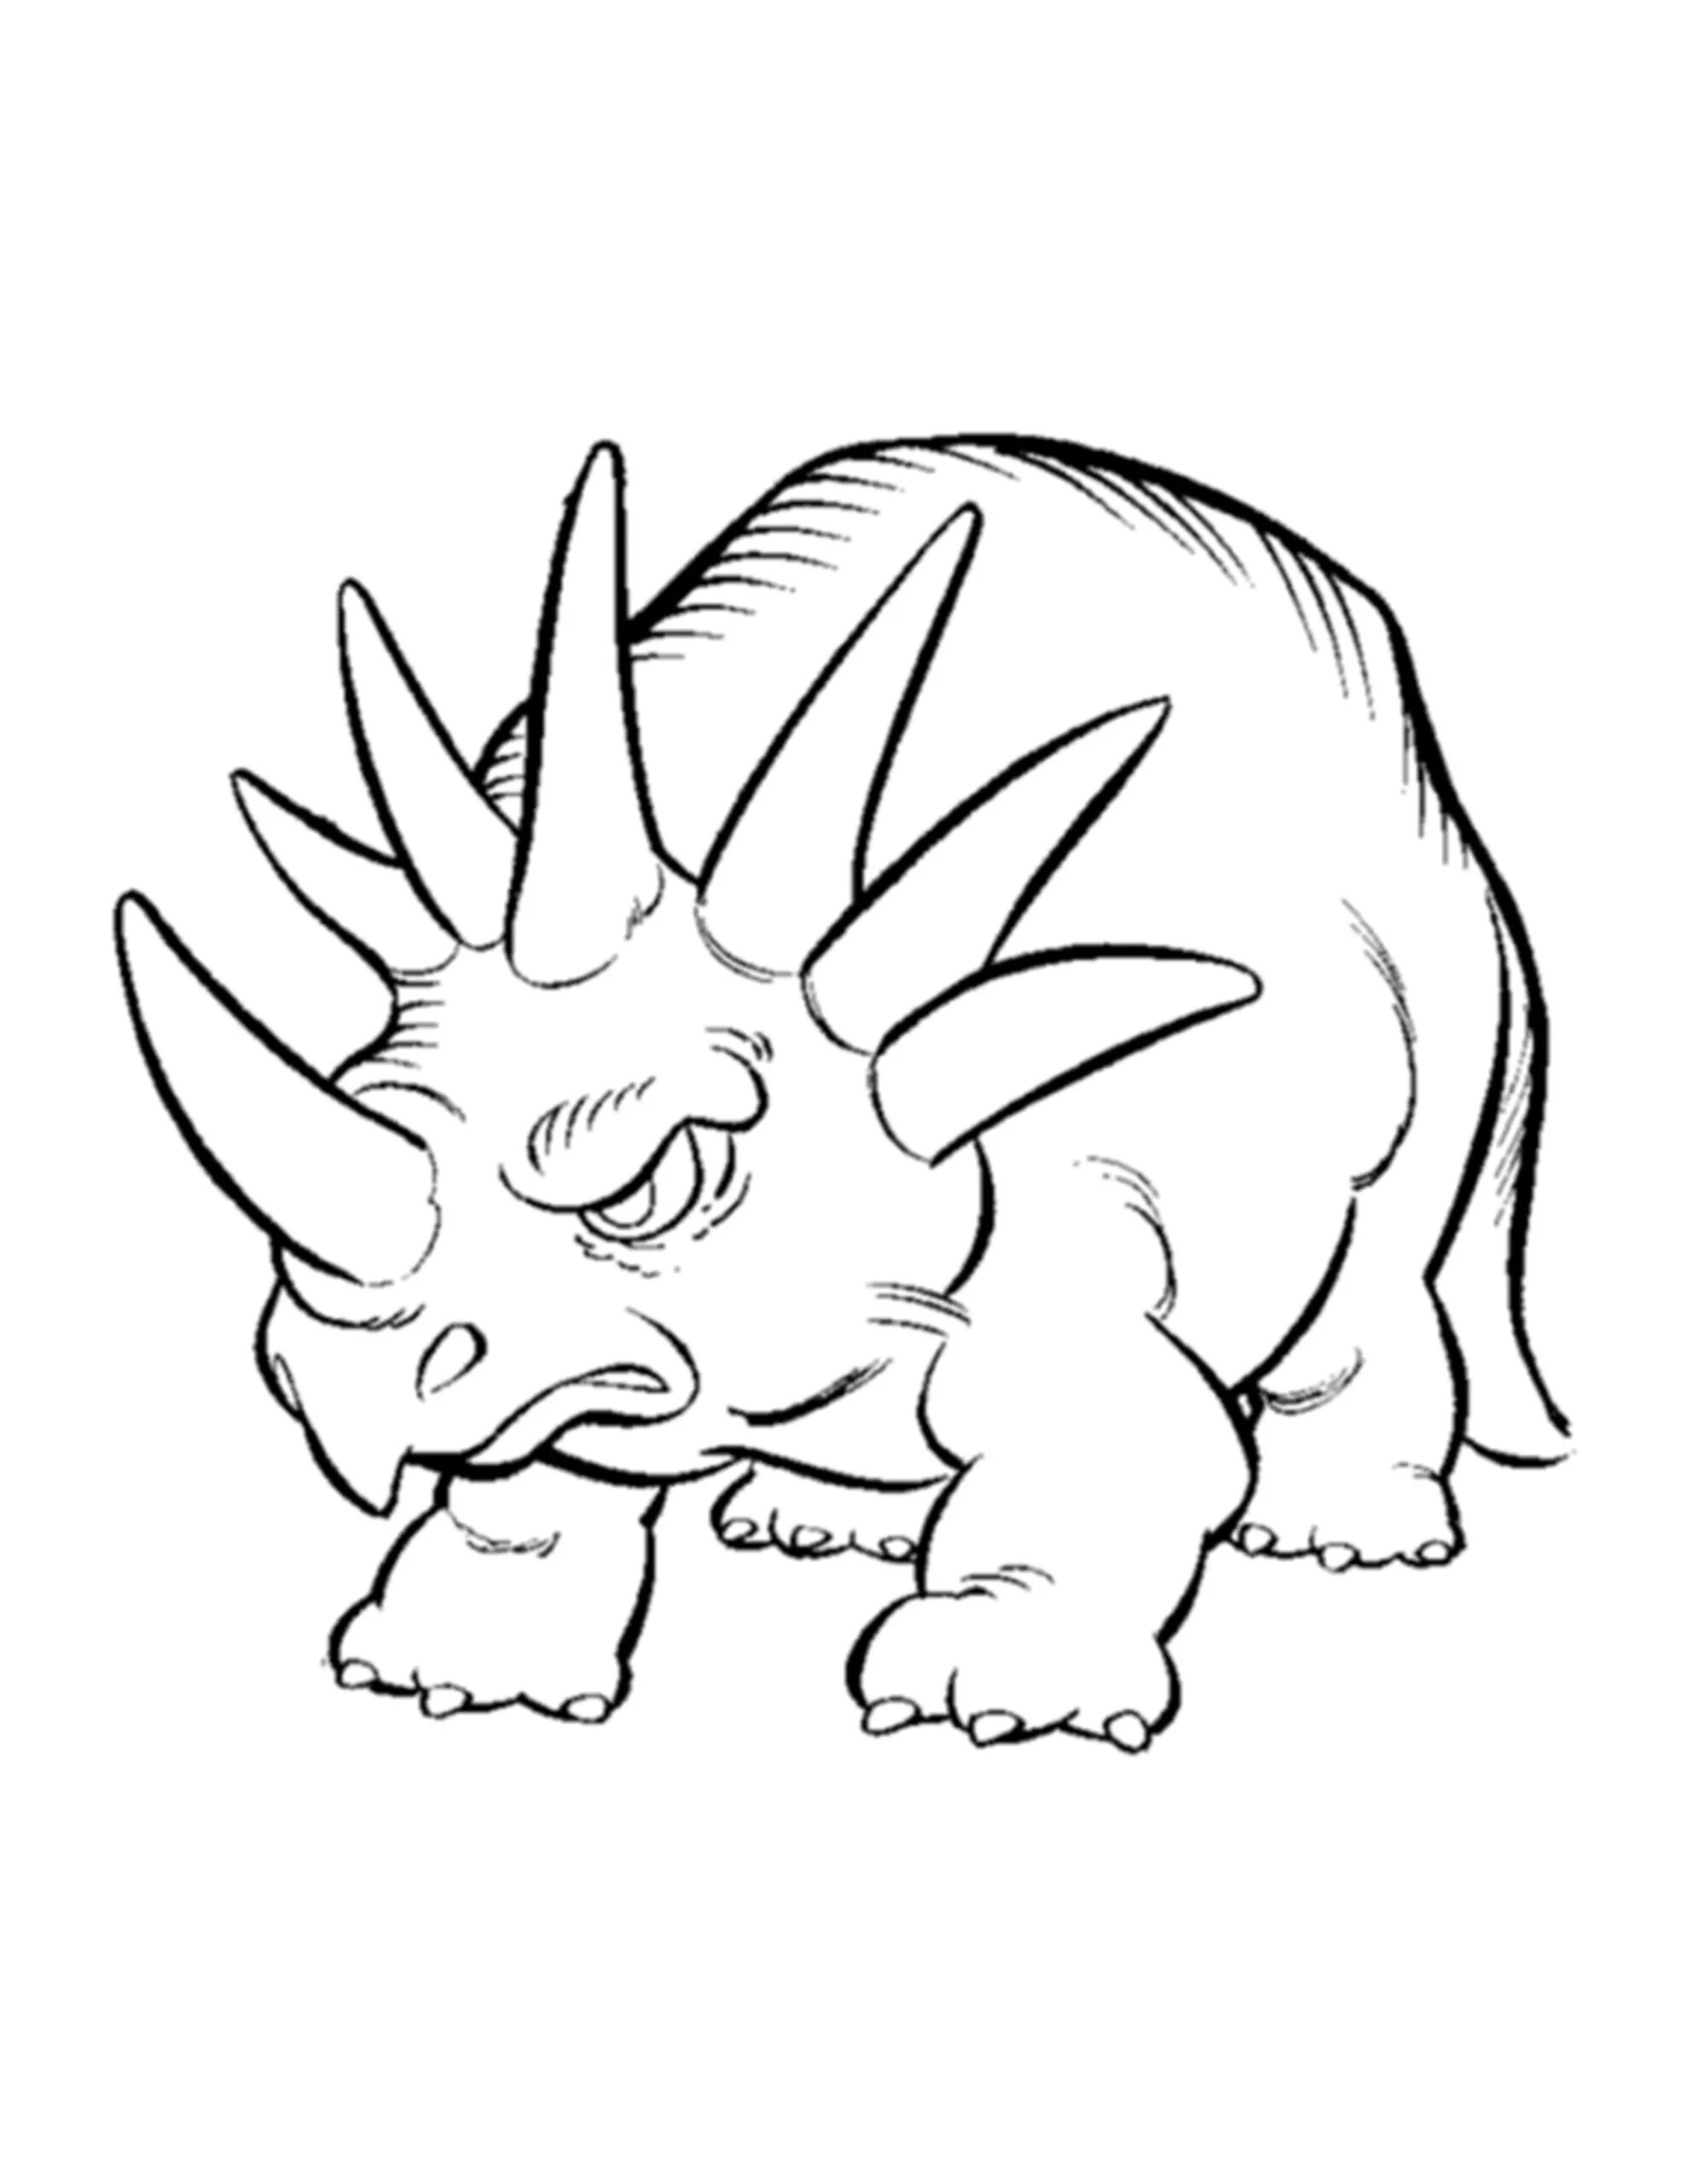 Great styracosaurus coloring page